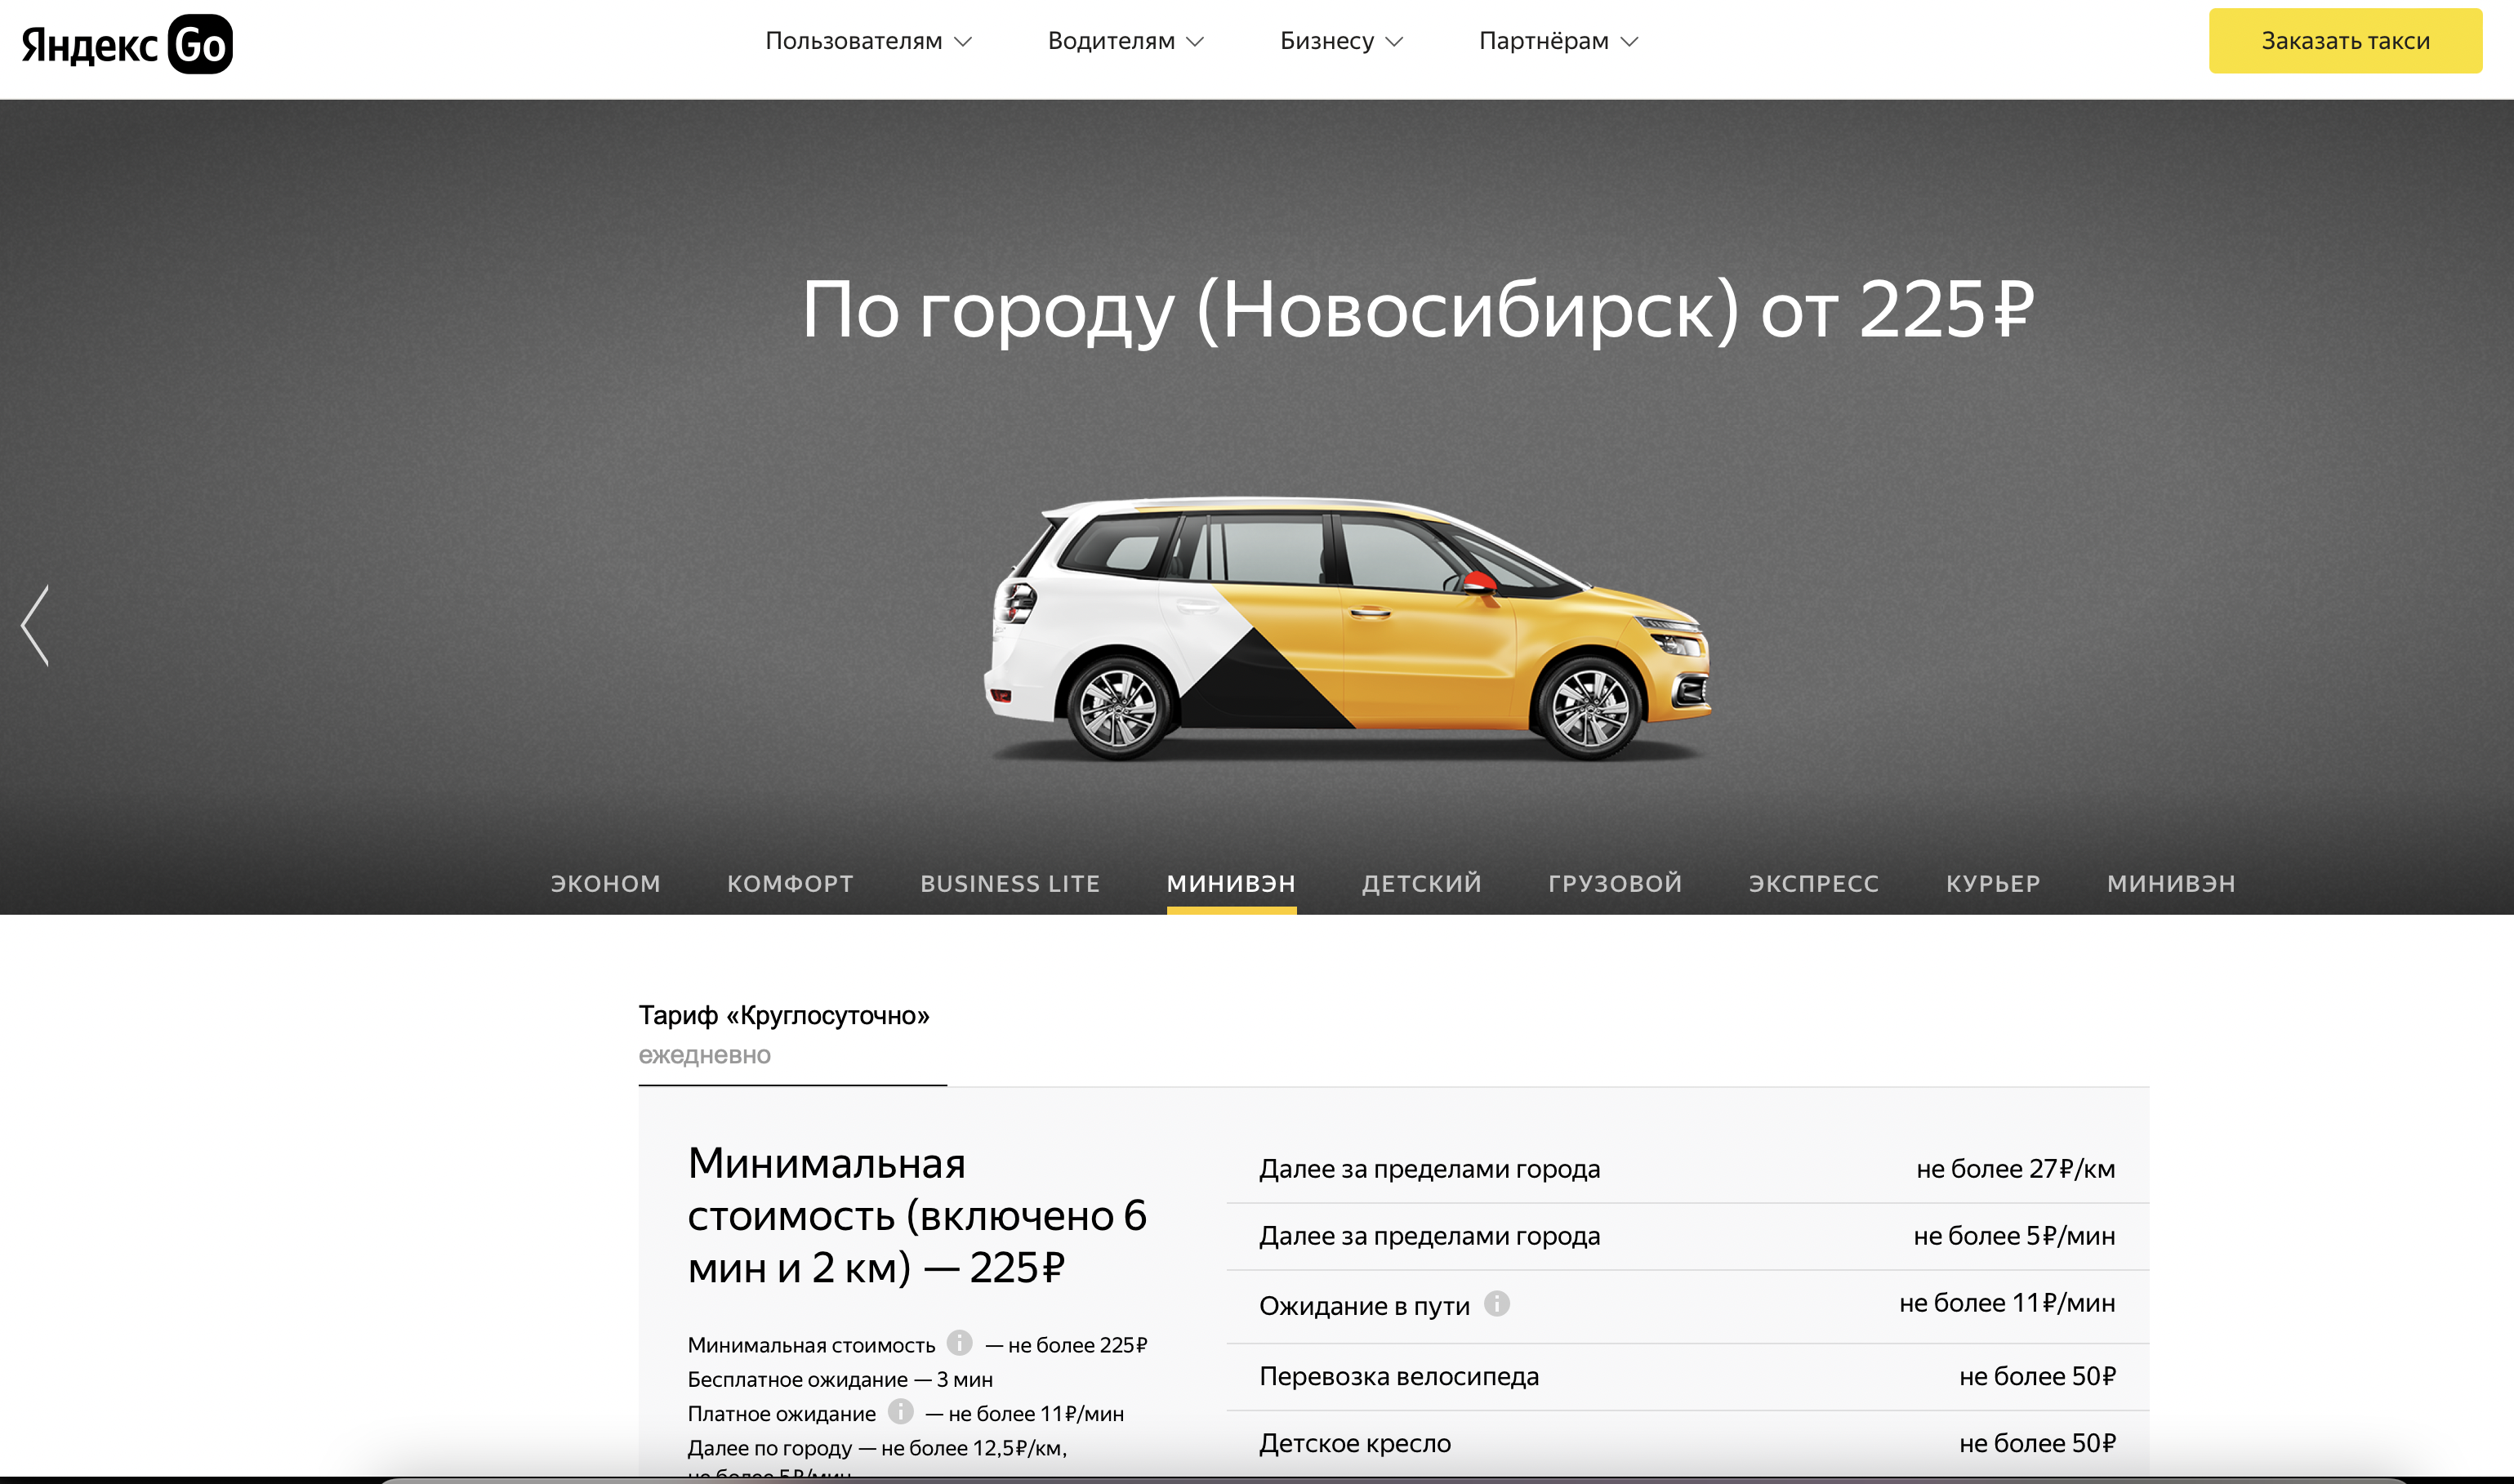 Водитель такси в новосибирске. Такси Новосибирск заказать.